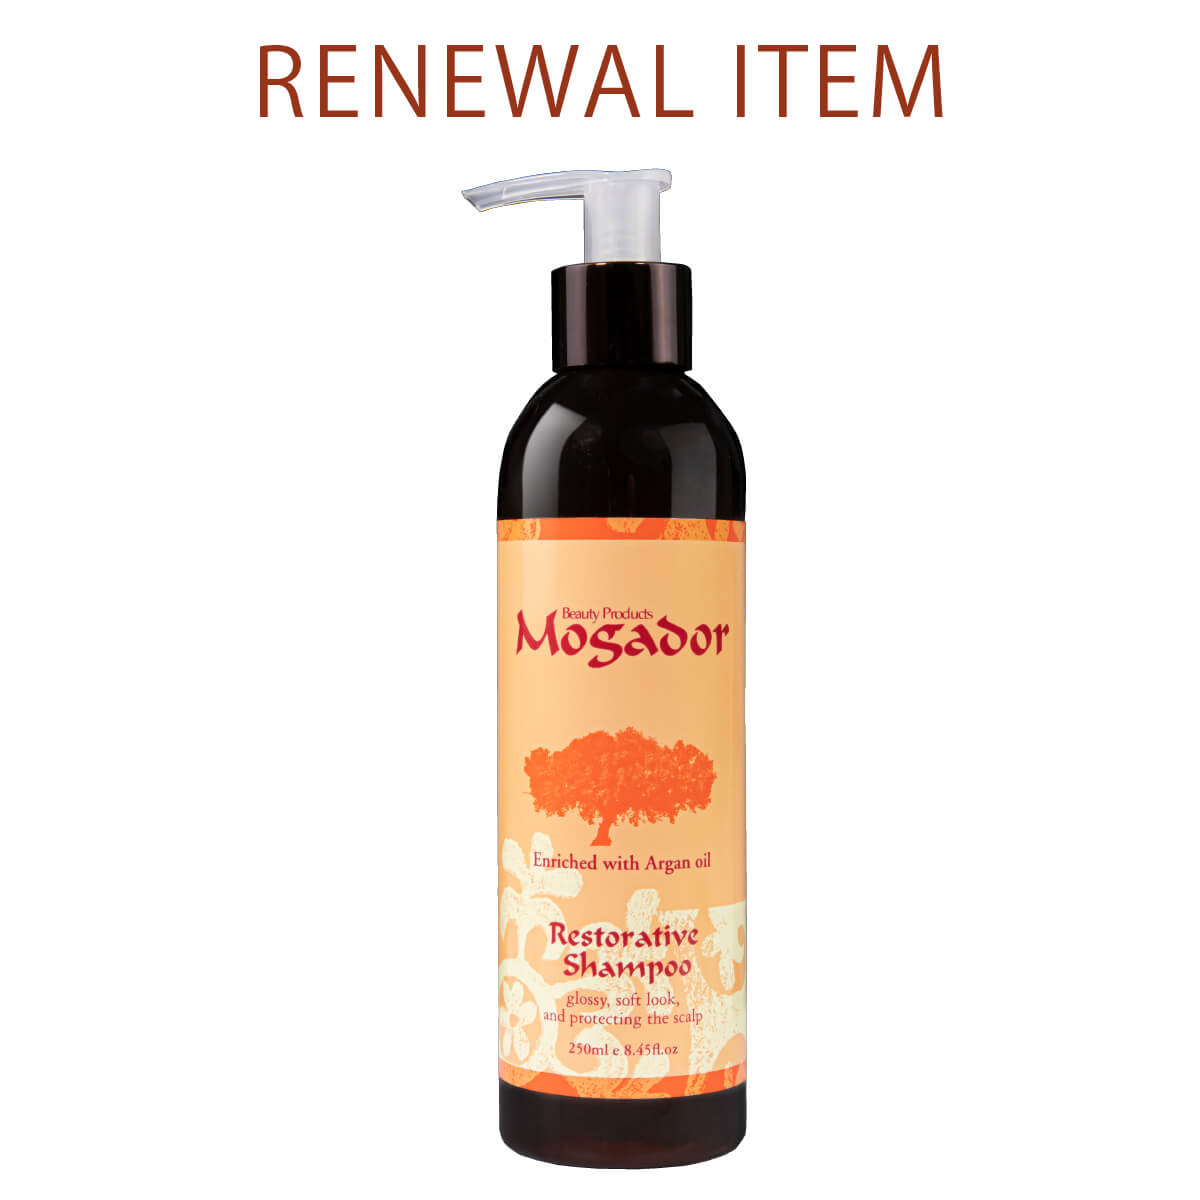 RENEWAL Mogador HAIR shampoo 250ml|JAS Organic Complex ™|日本限定 新し香りにリニューアル